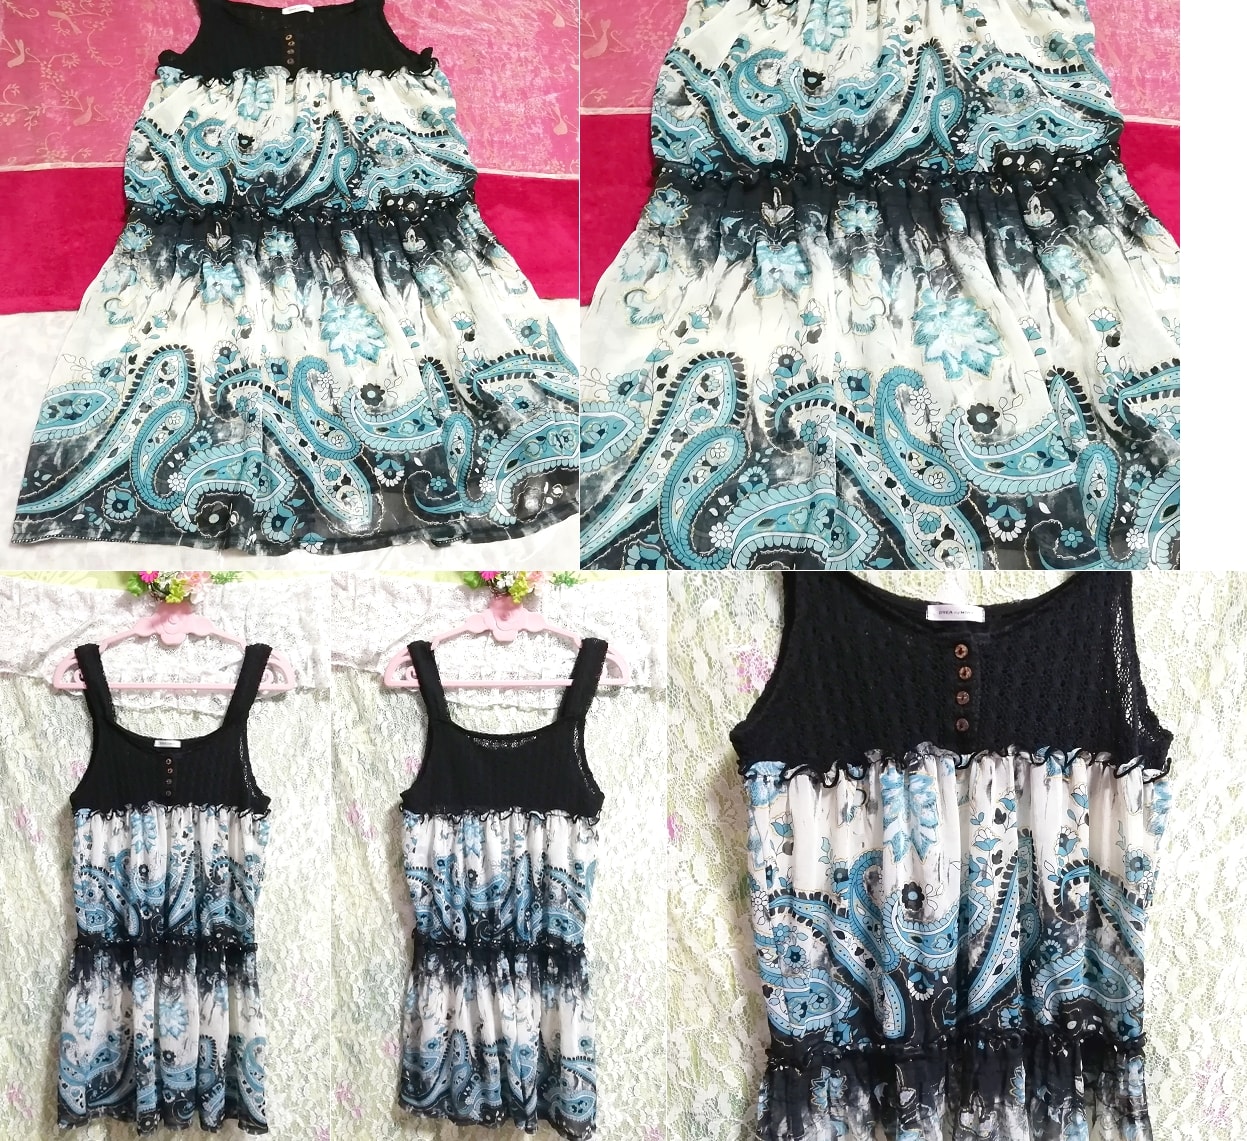 Black knit blue ethnic pattern skirt sleeveless negligee nightgown tunic dress, tunic, sleeveless, sleeveless, m size